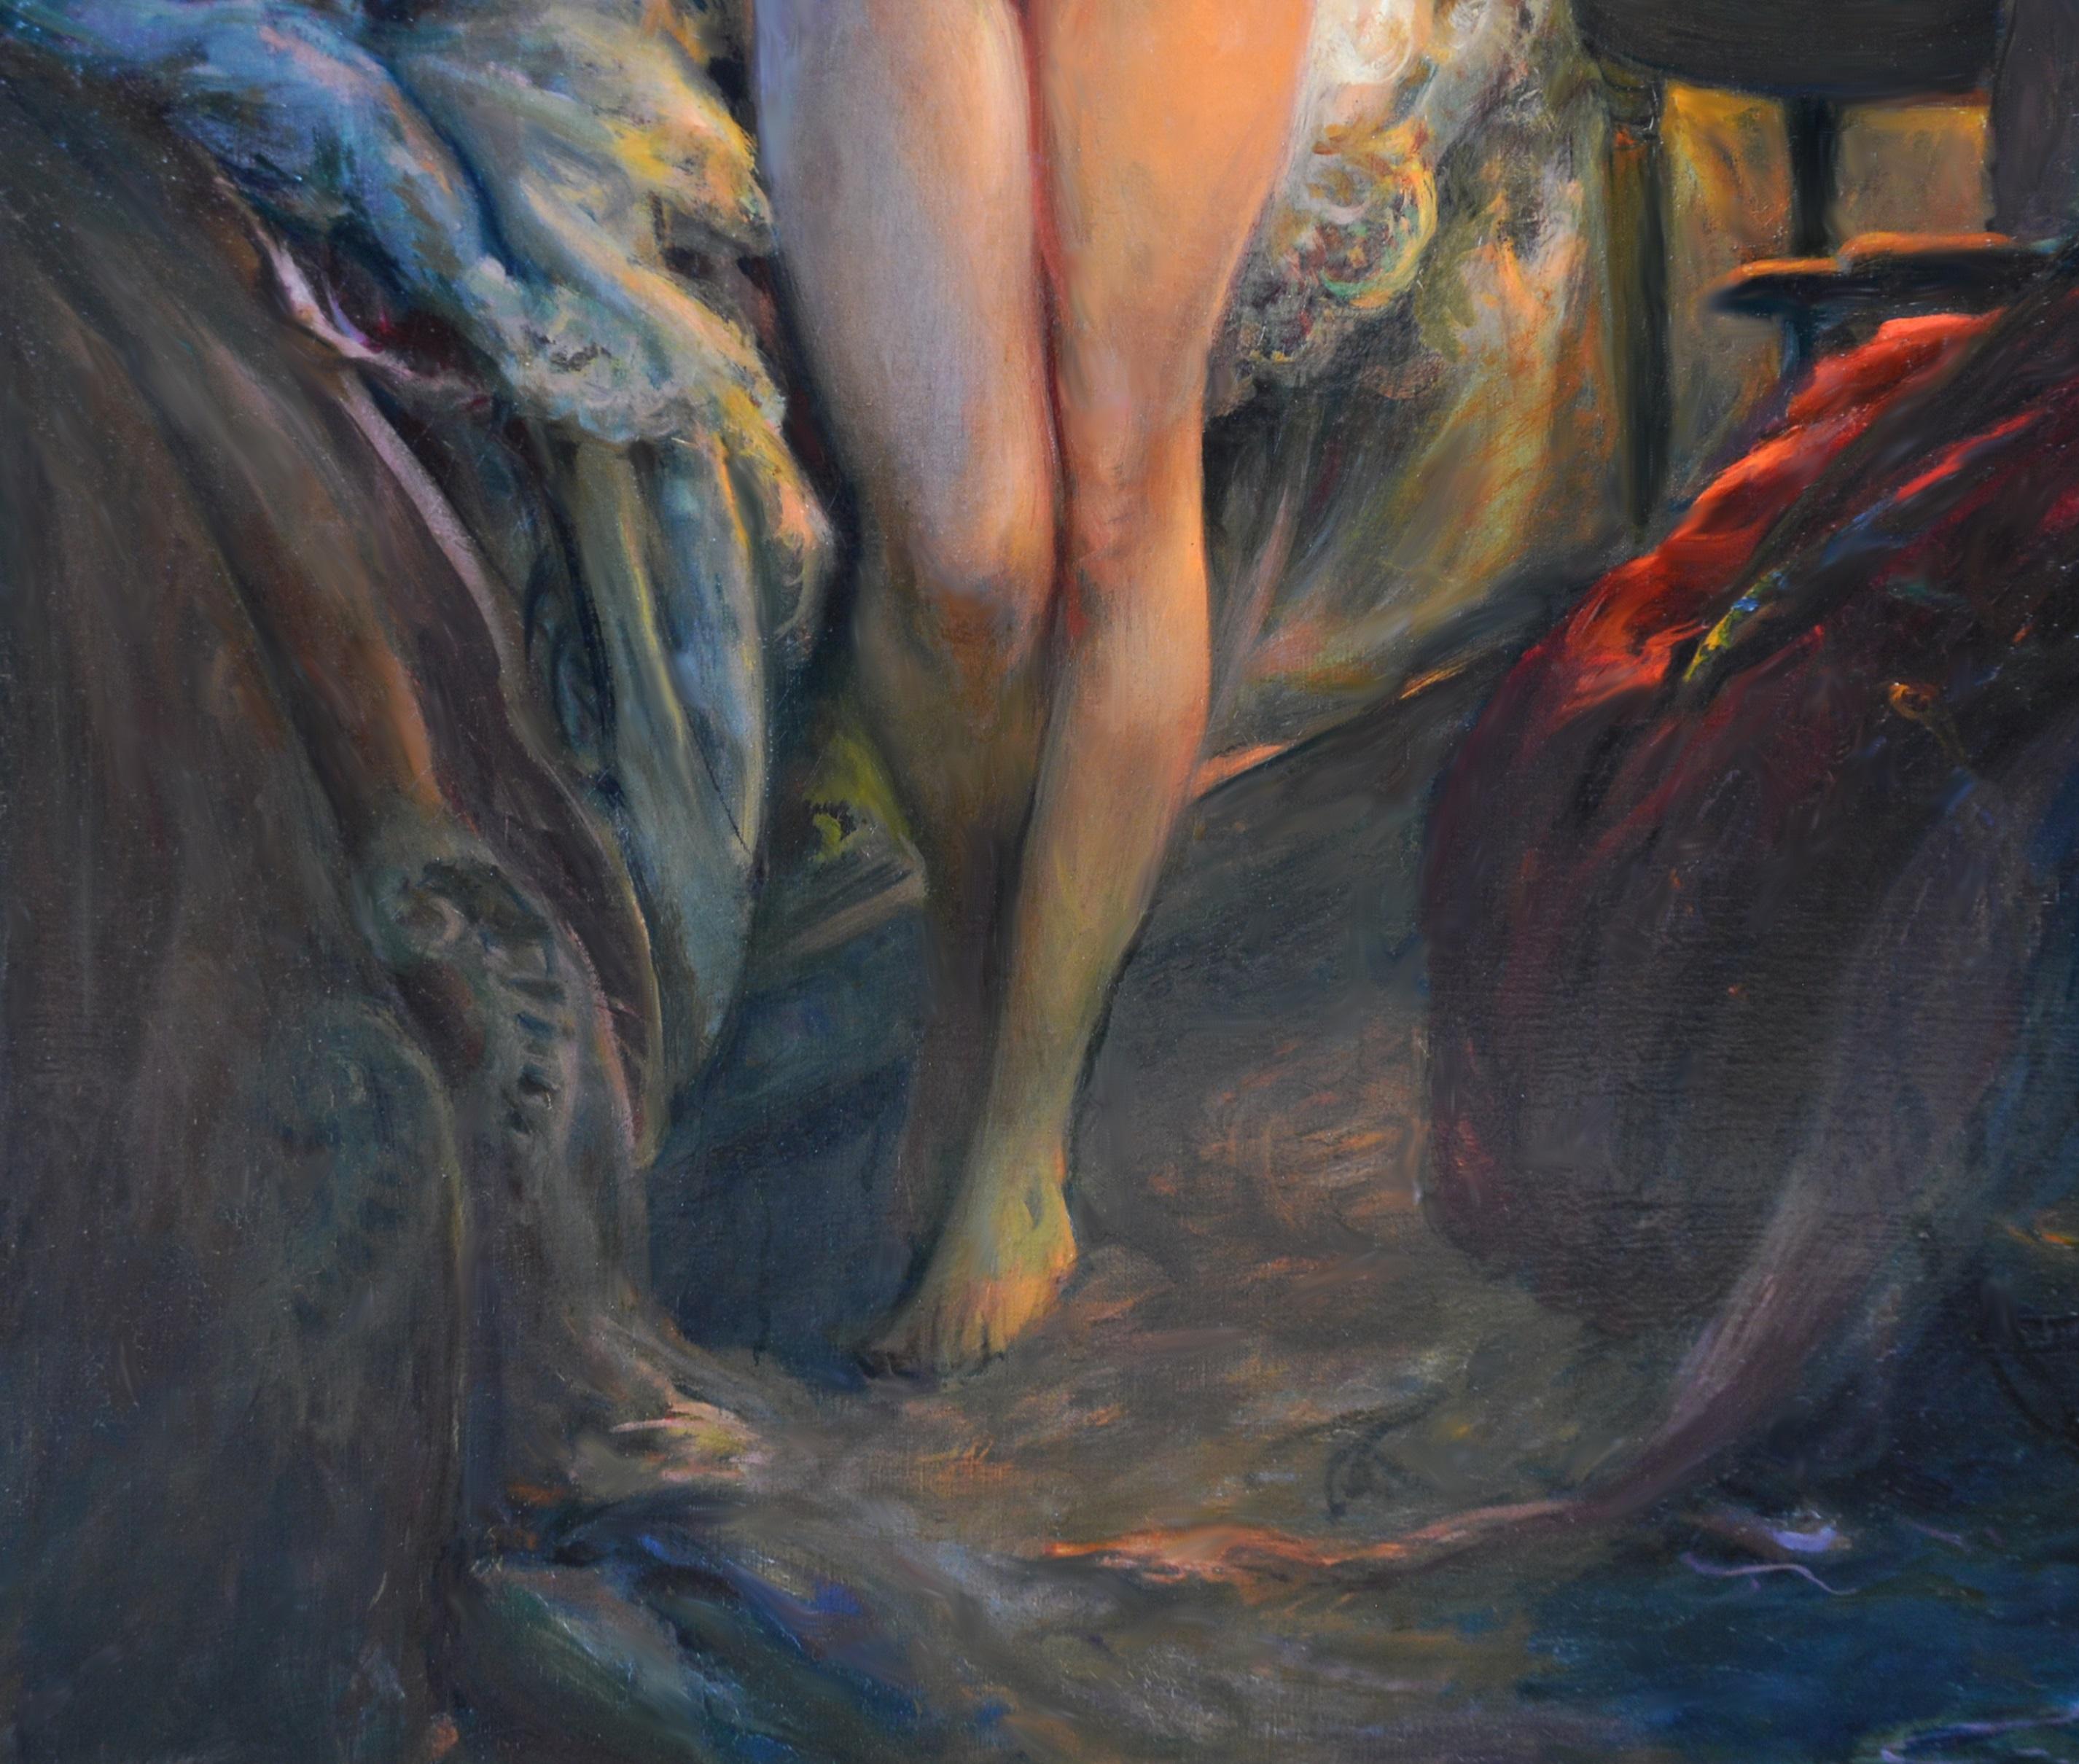 A l'Heure de se Coucher - Impressionist Portrait Oil Painting Nude by Lamplight 4